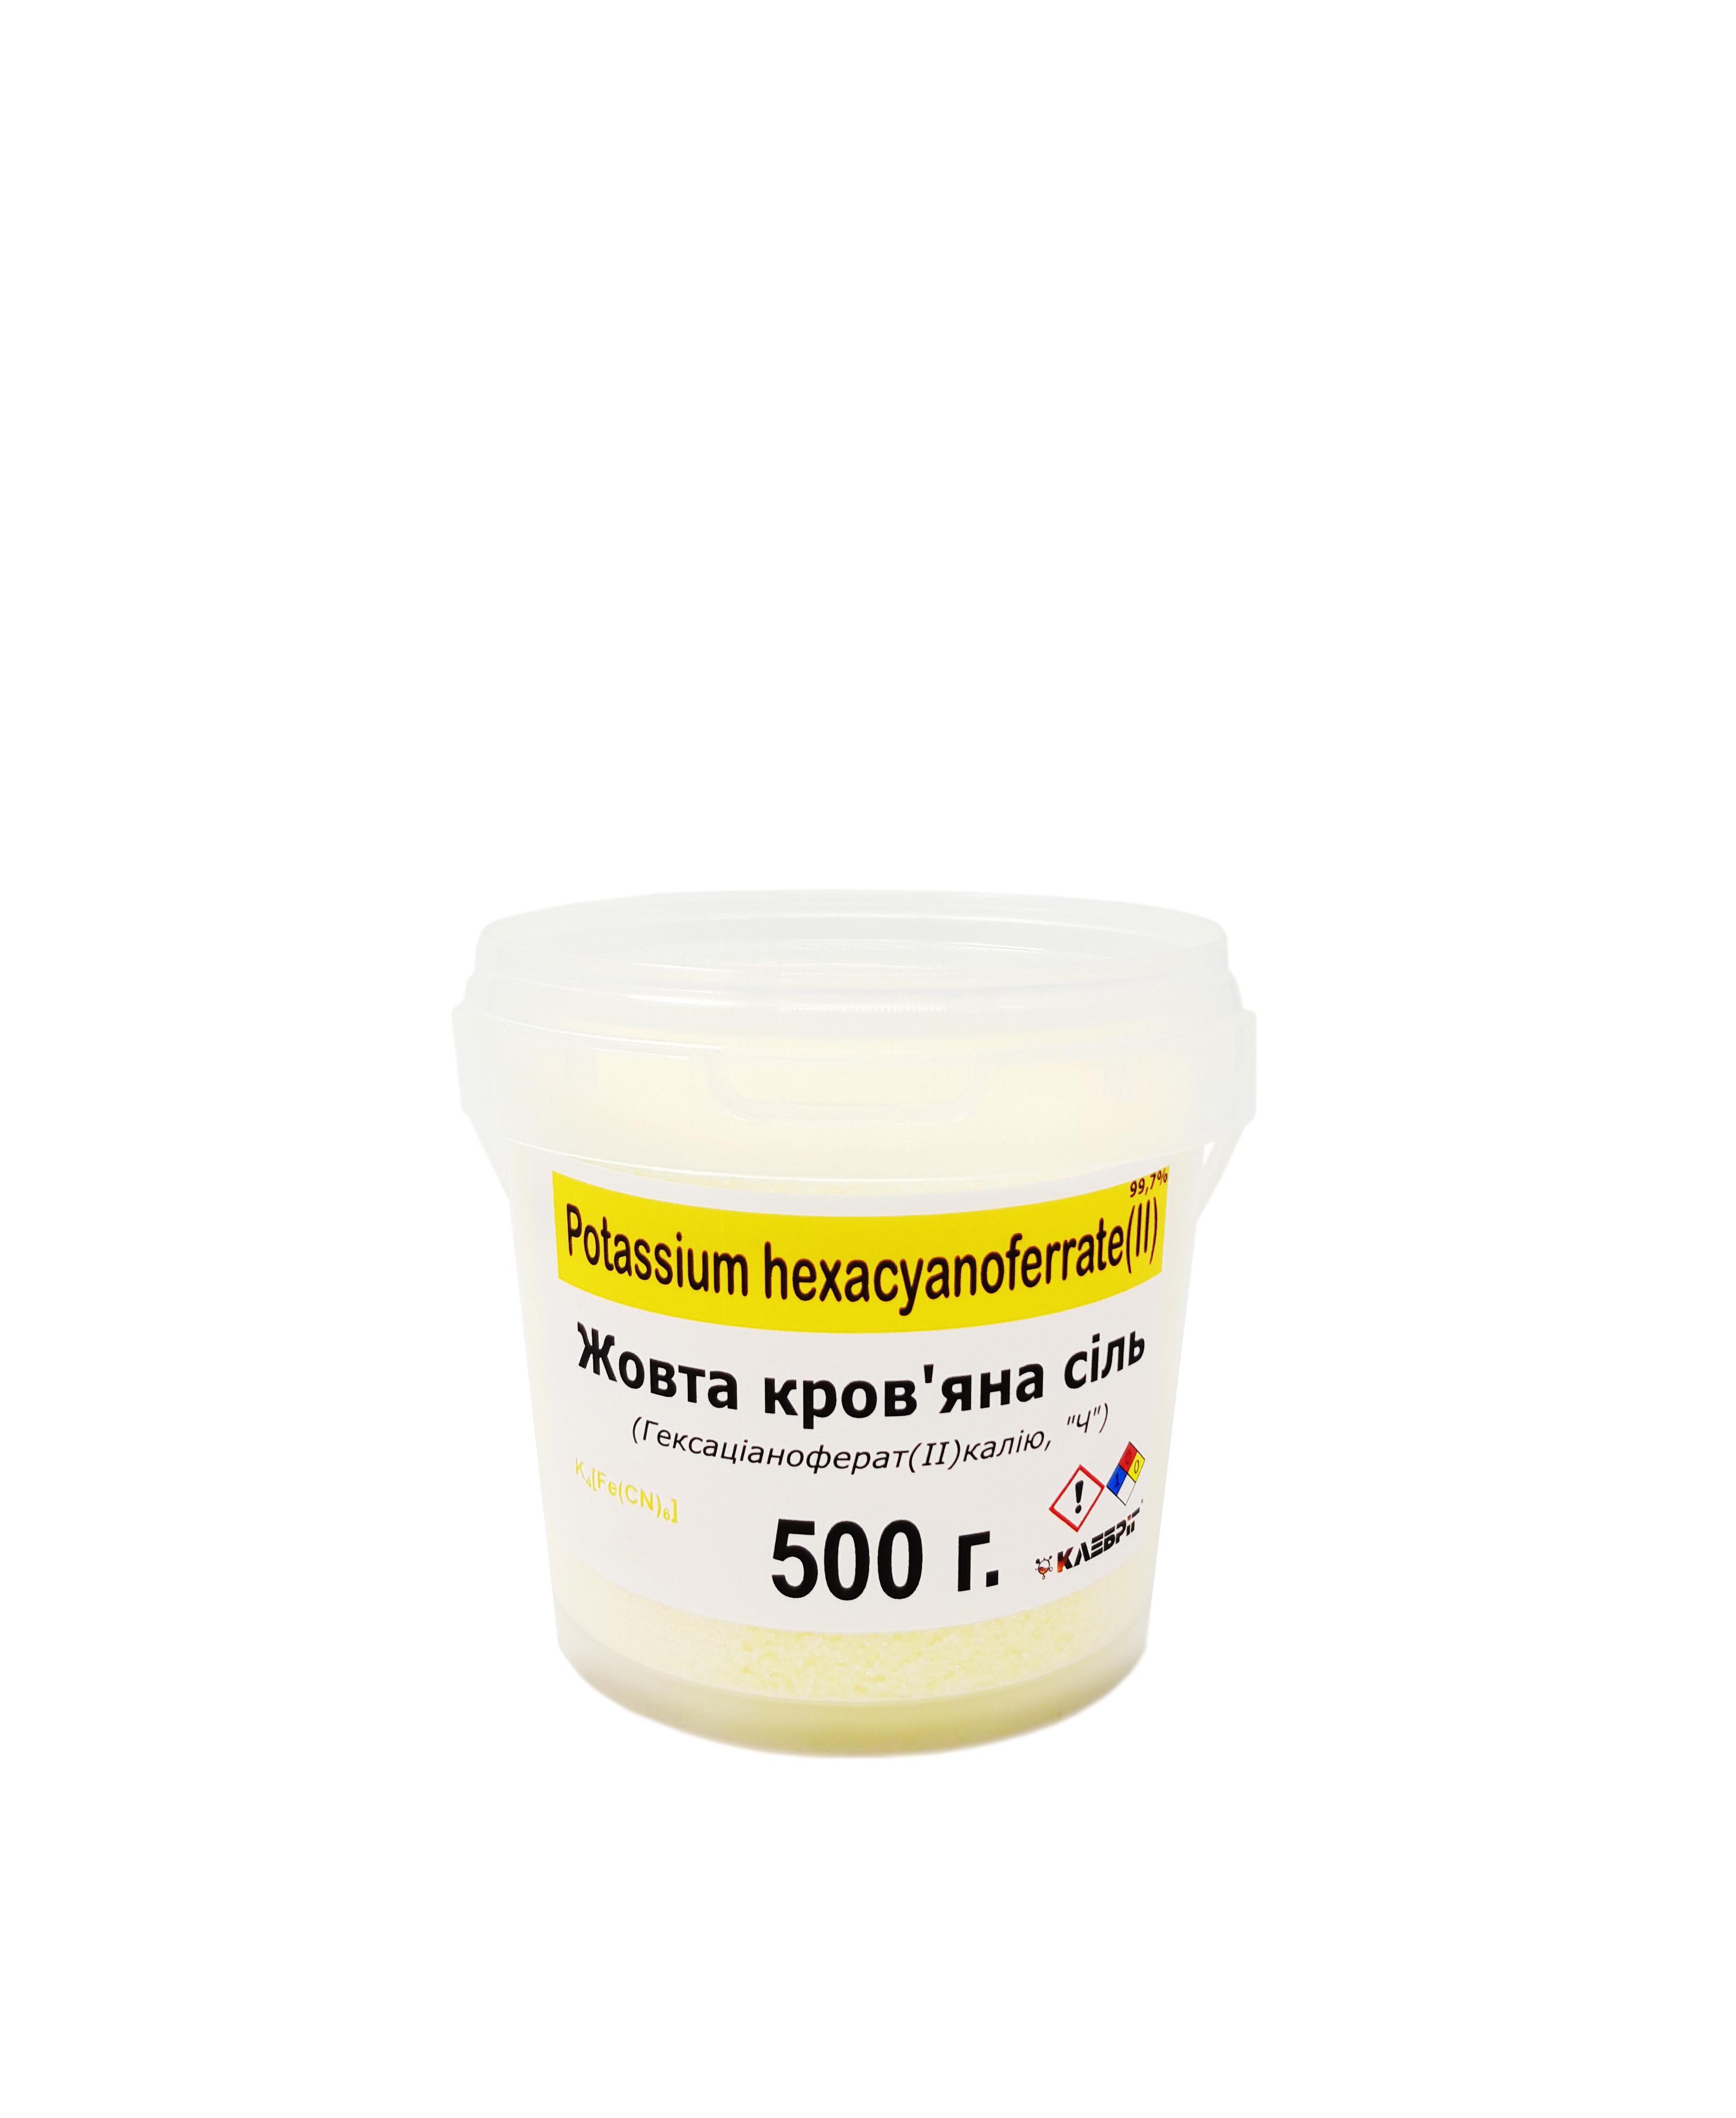 Жовта кров'яна сіль Klebrig Гексаціаноферат (II) калію 500 г (Ж.КРСЛ-0,5)